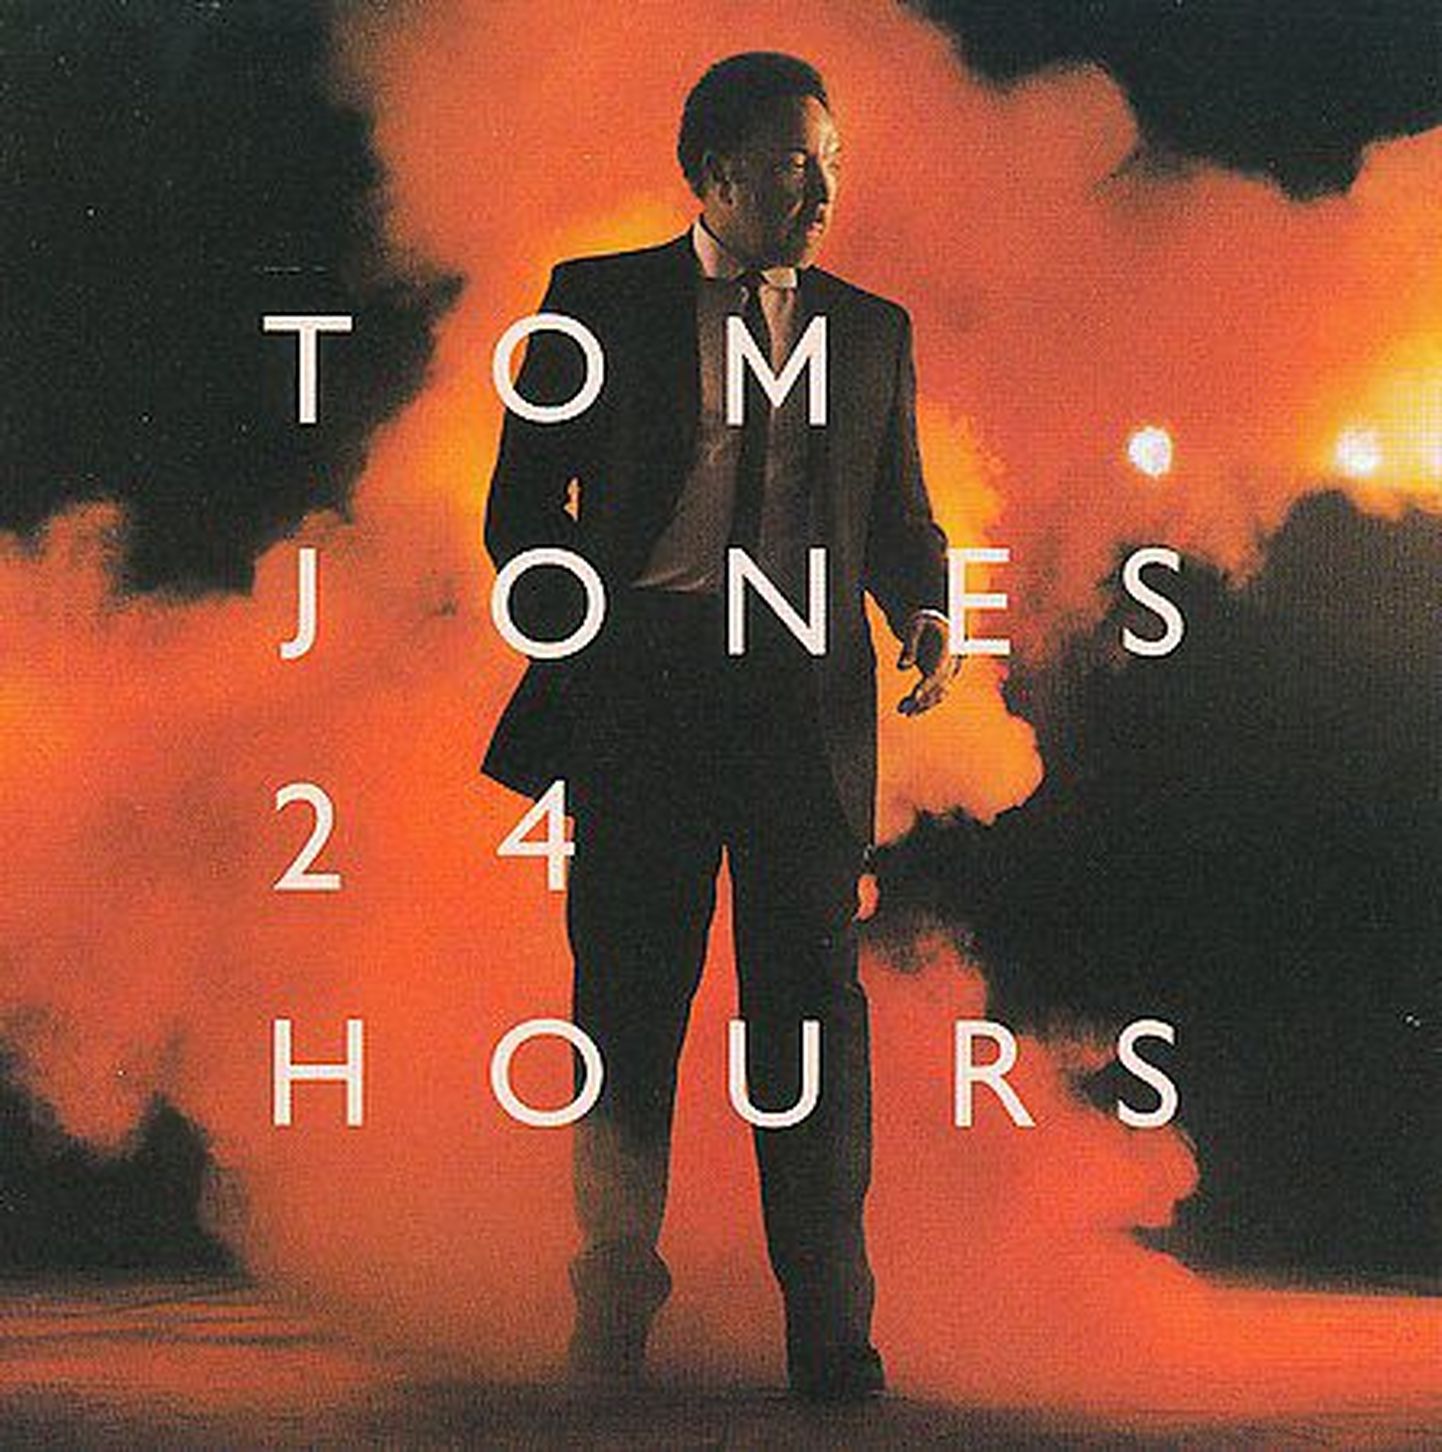 Tom Jones "24 Hours".